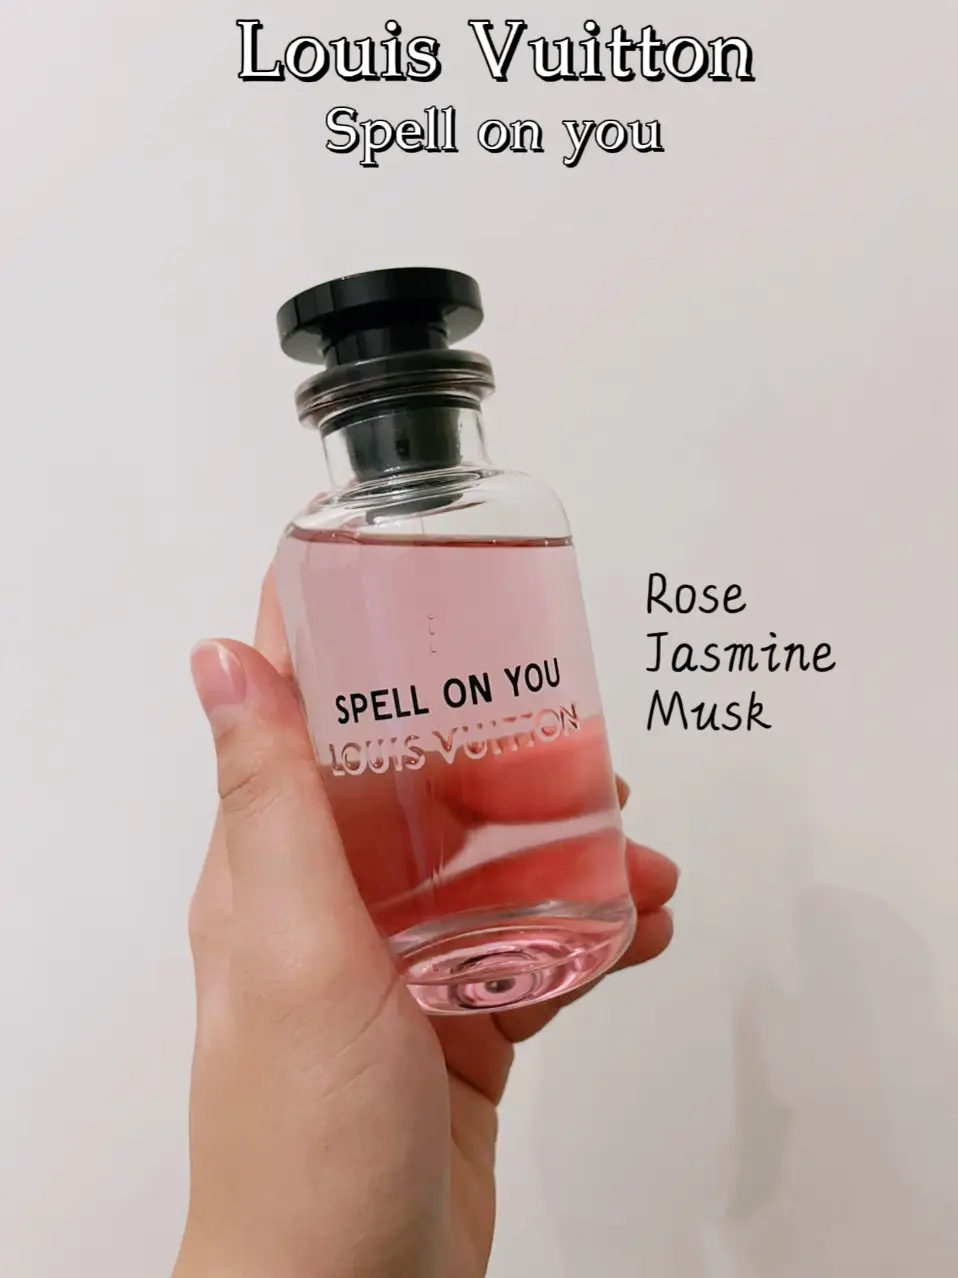 Heart scent - Louis Vuitton Rose des Vents Us tester perfume